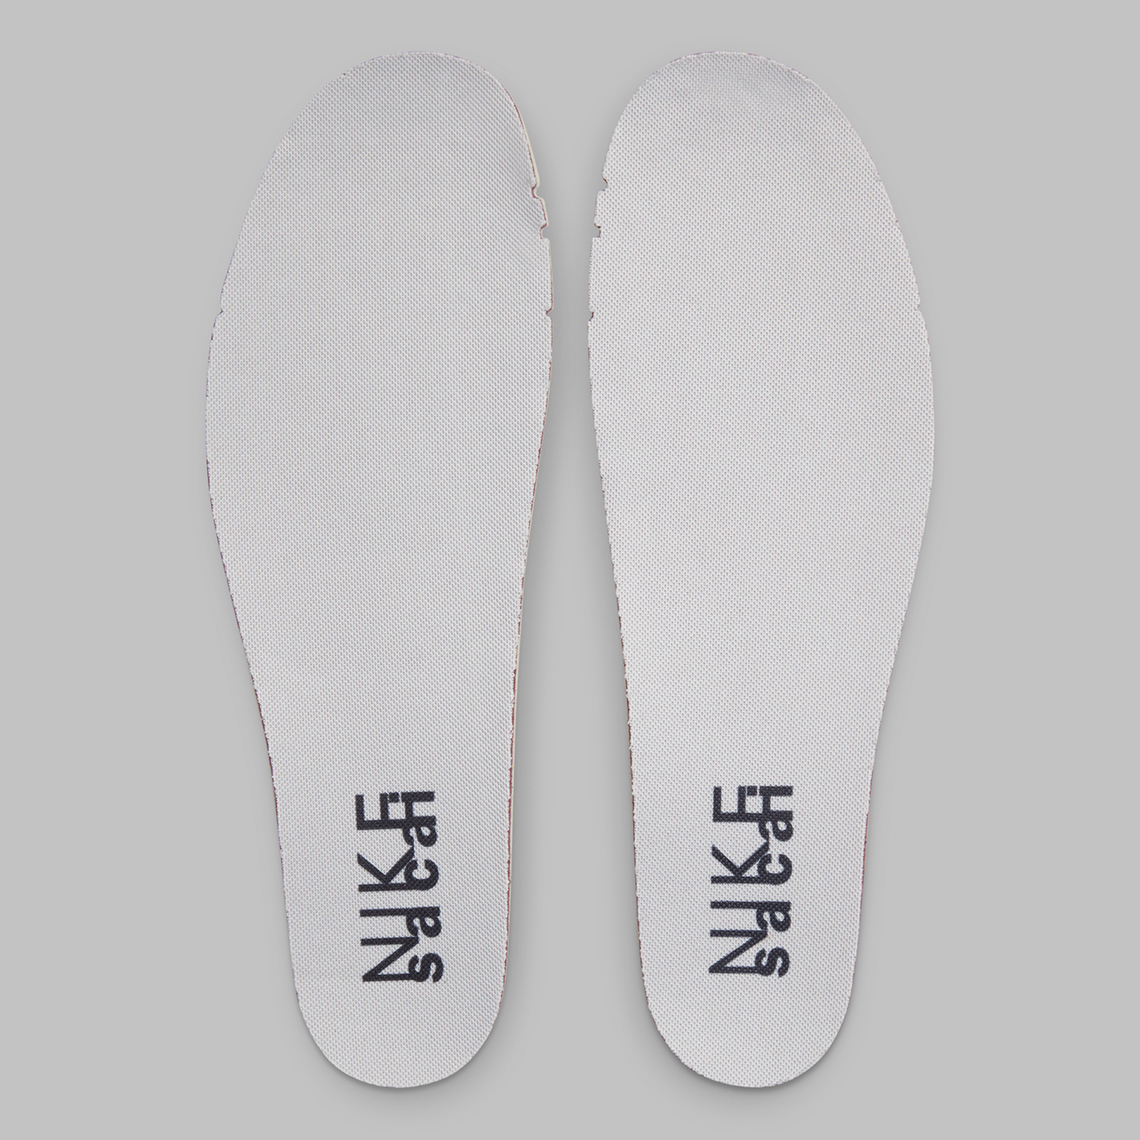 Nike Cortez Sacai Grey White Dq0581 001 11